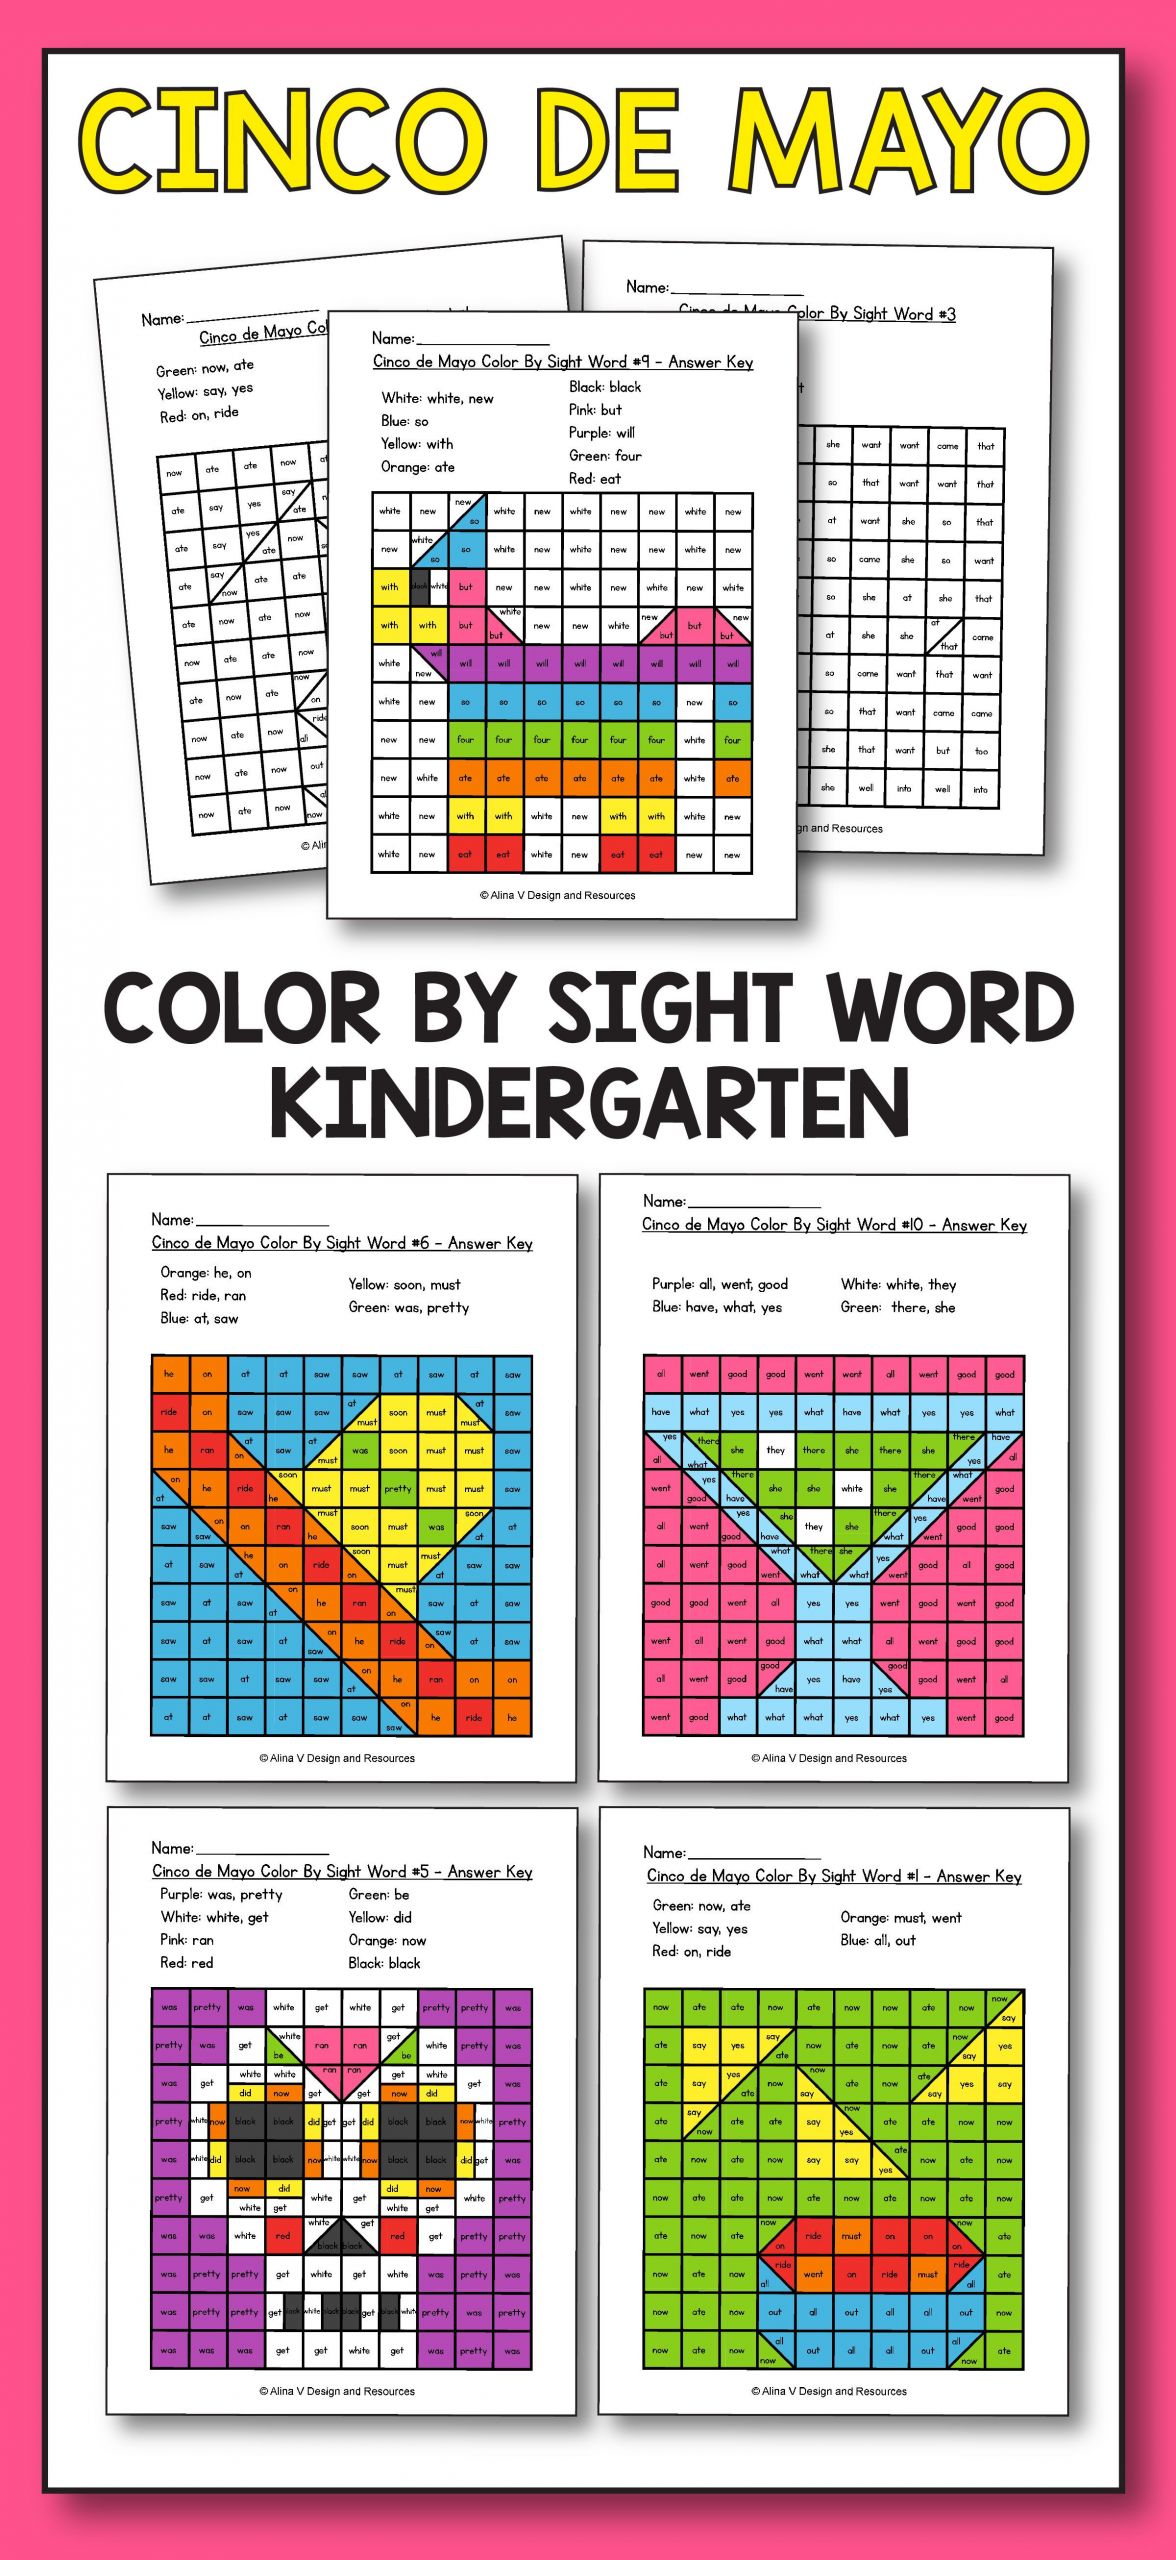 Cinco De Mayo Activities For Kindergarten
 Cinco De Mayo Color By Sight Word Cinco De Mayo